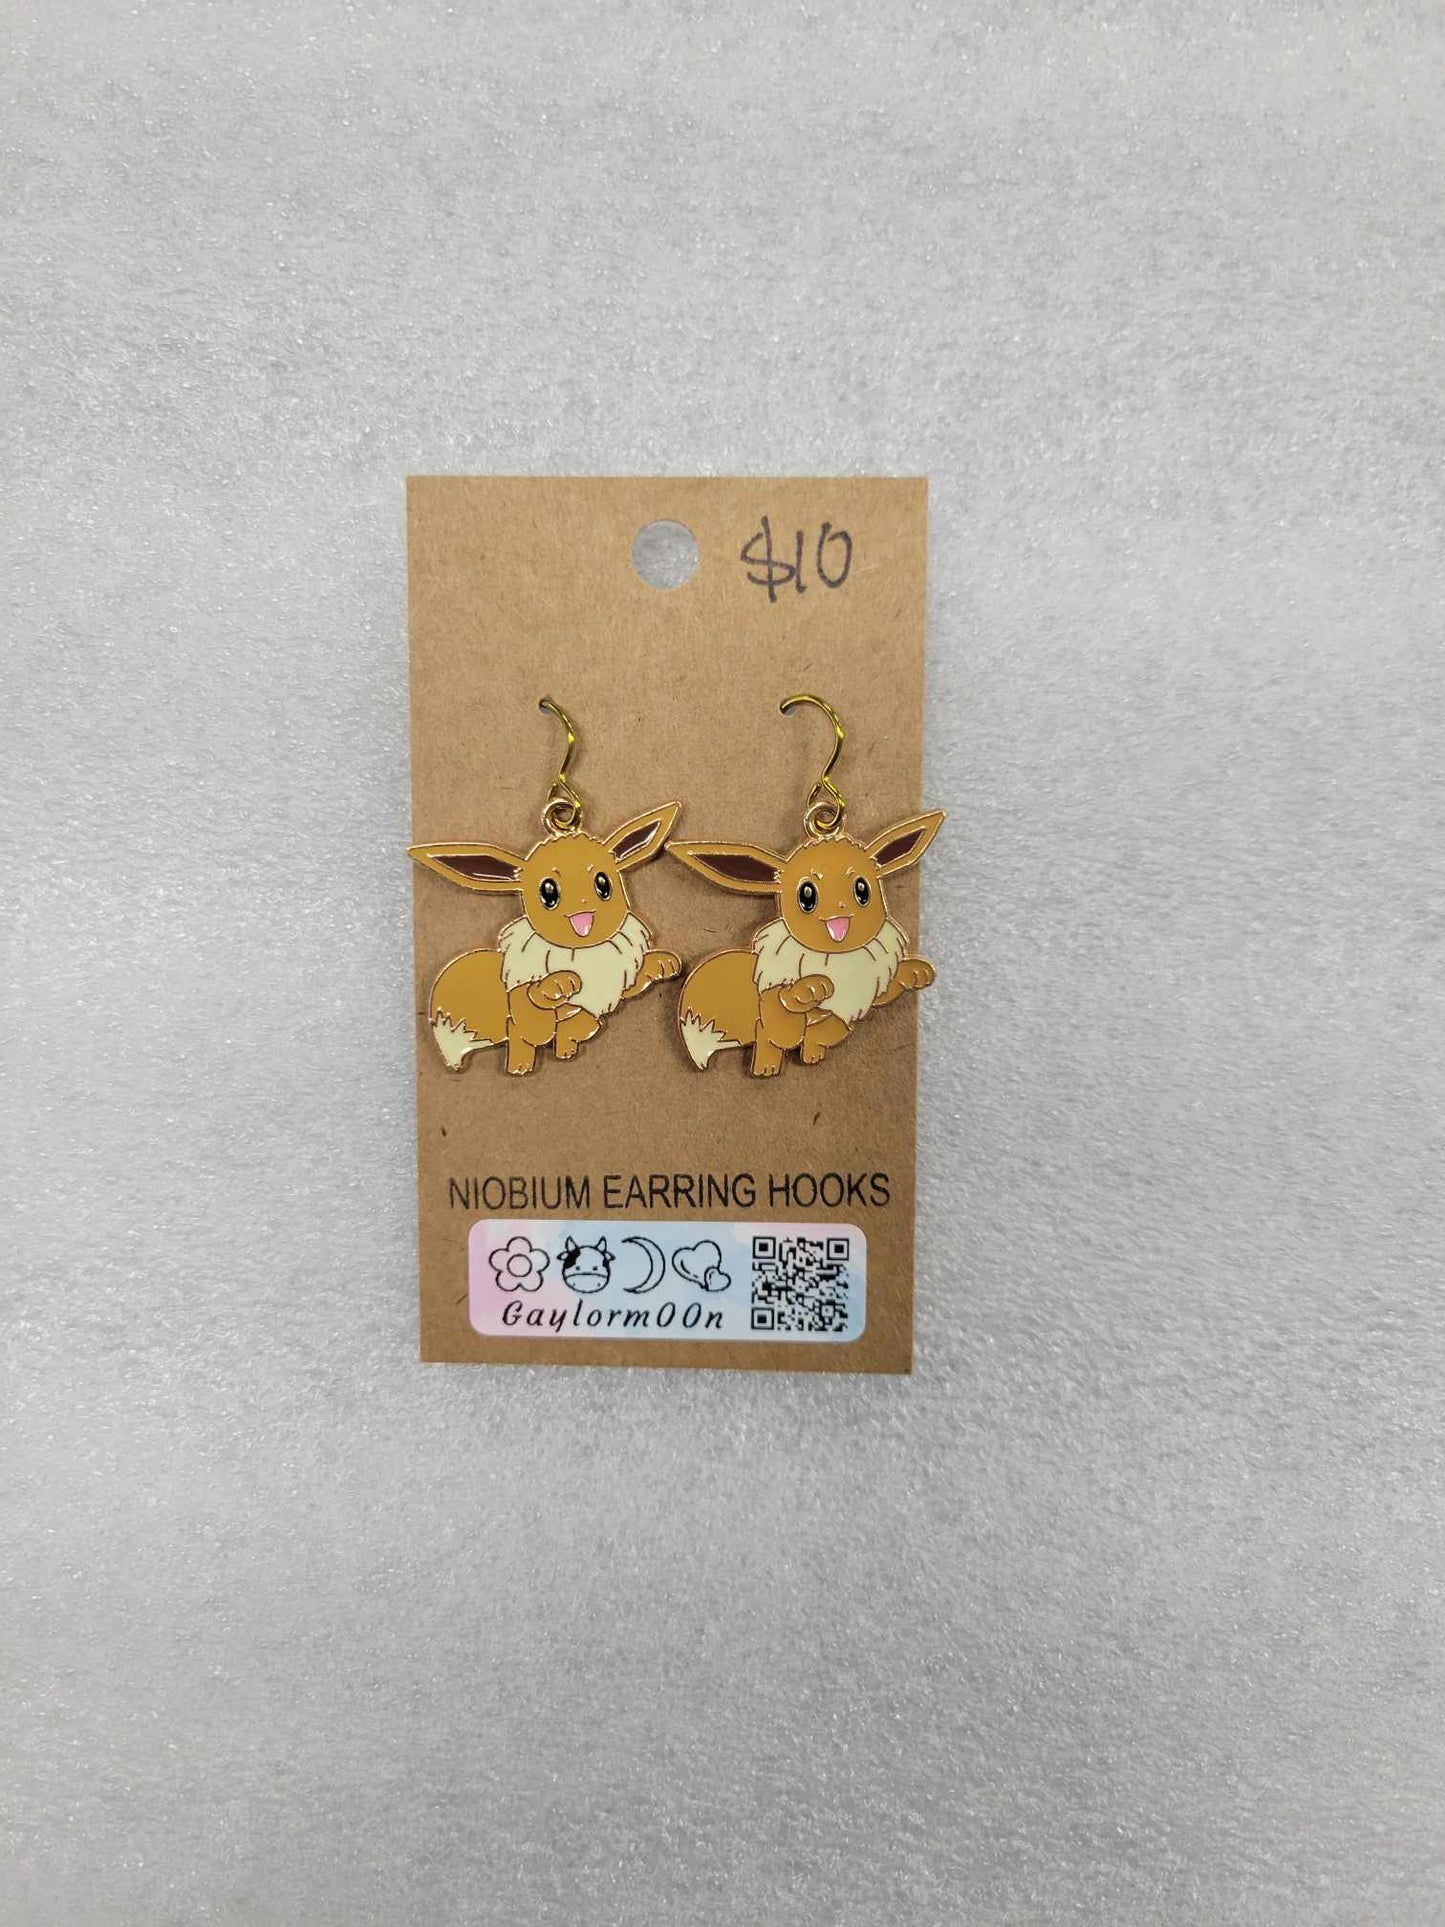 Eevee earrings